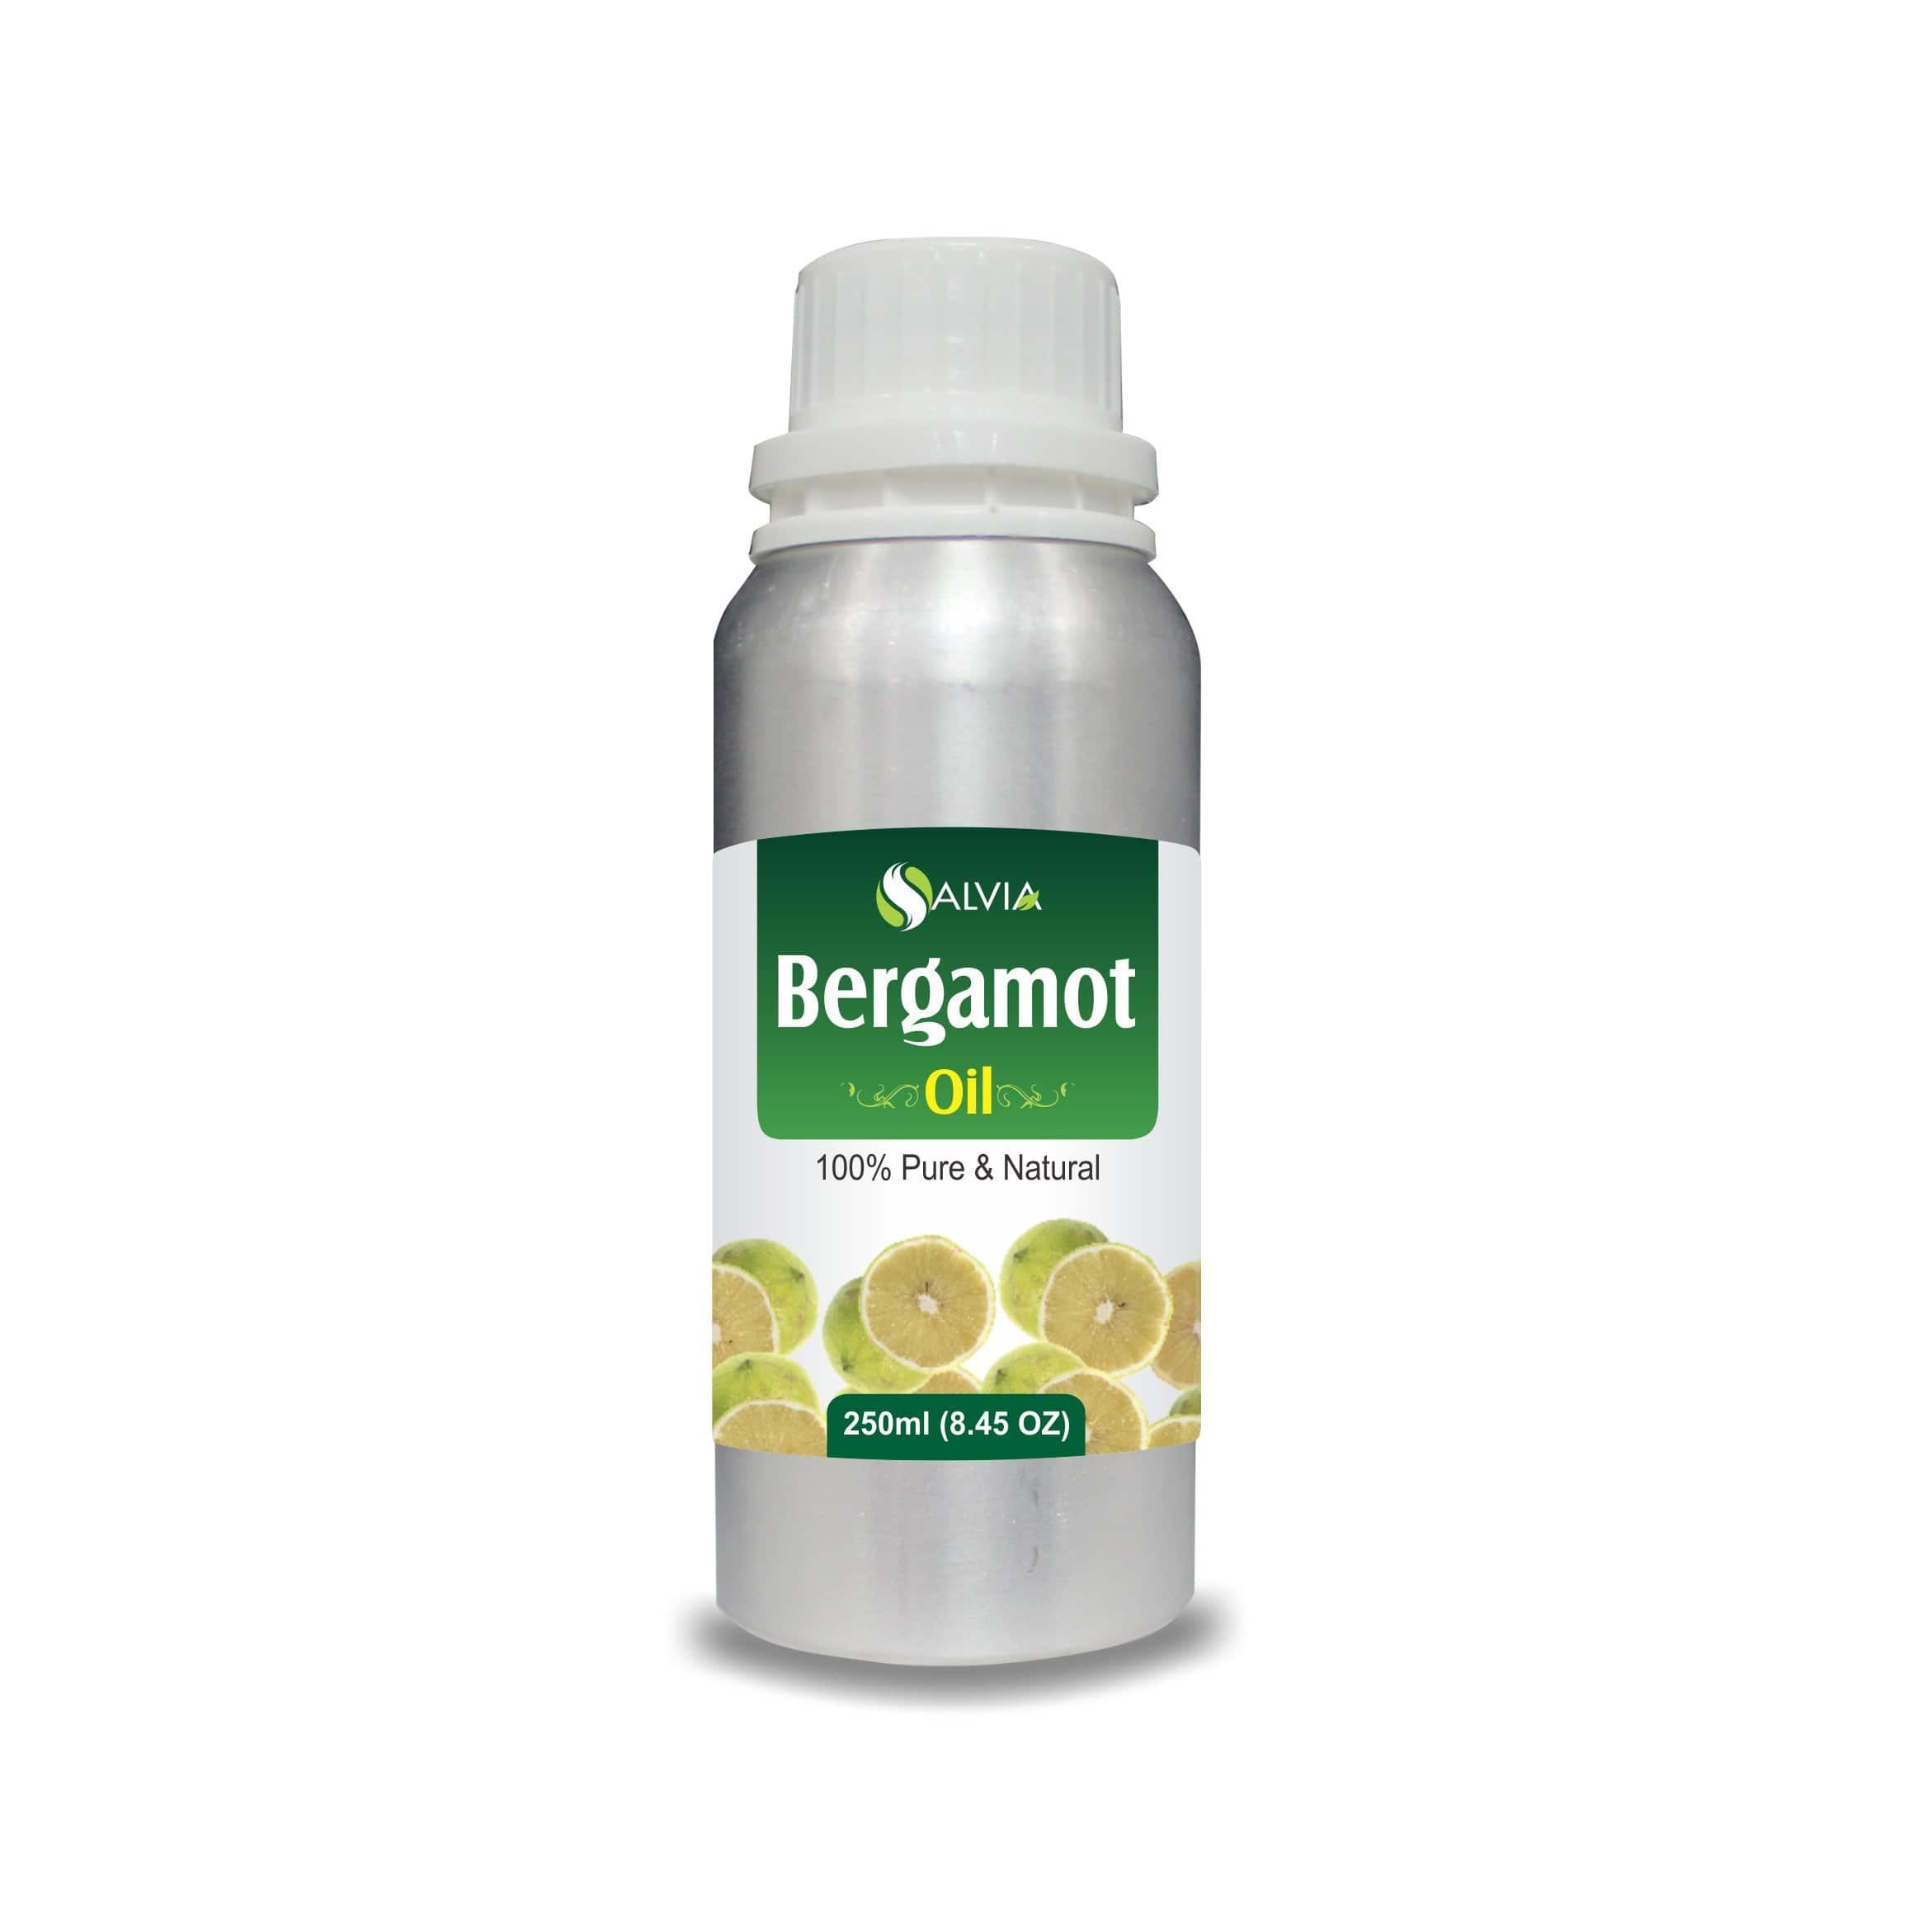 bergamot oil in skincare